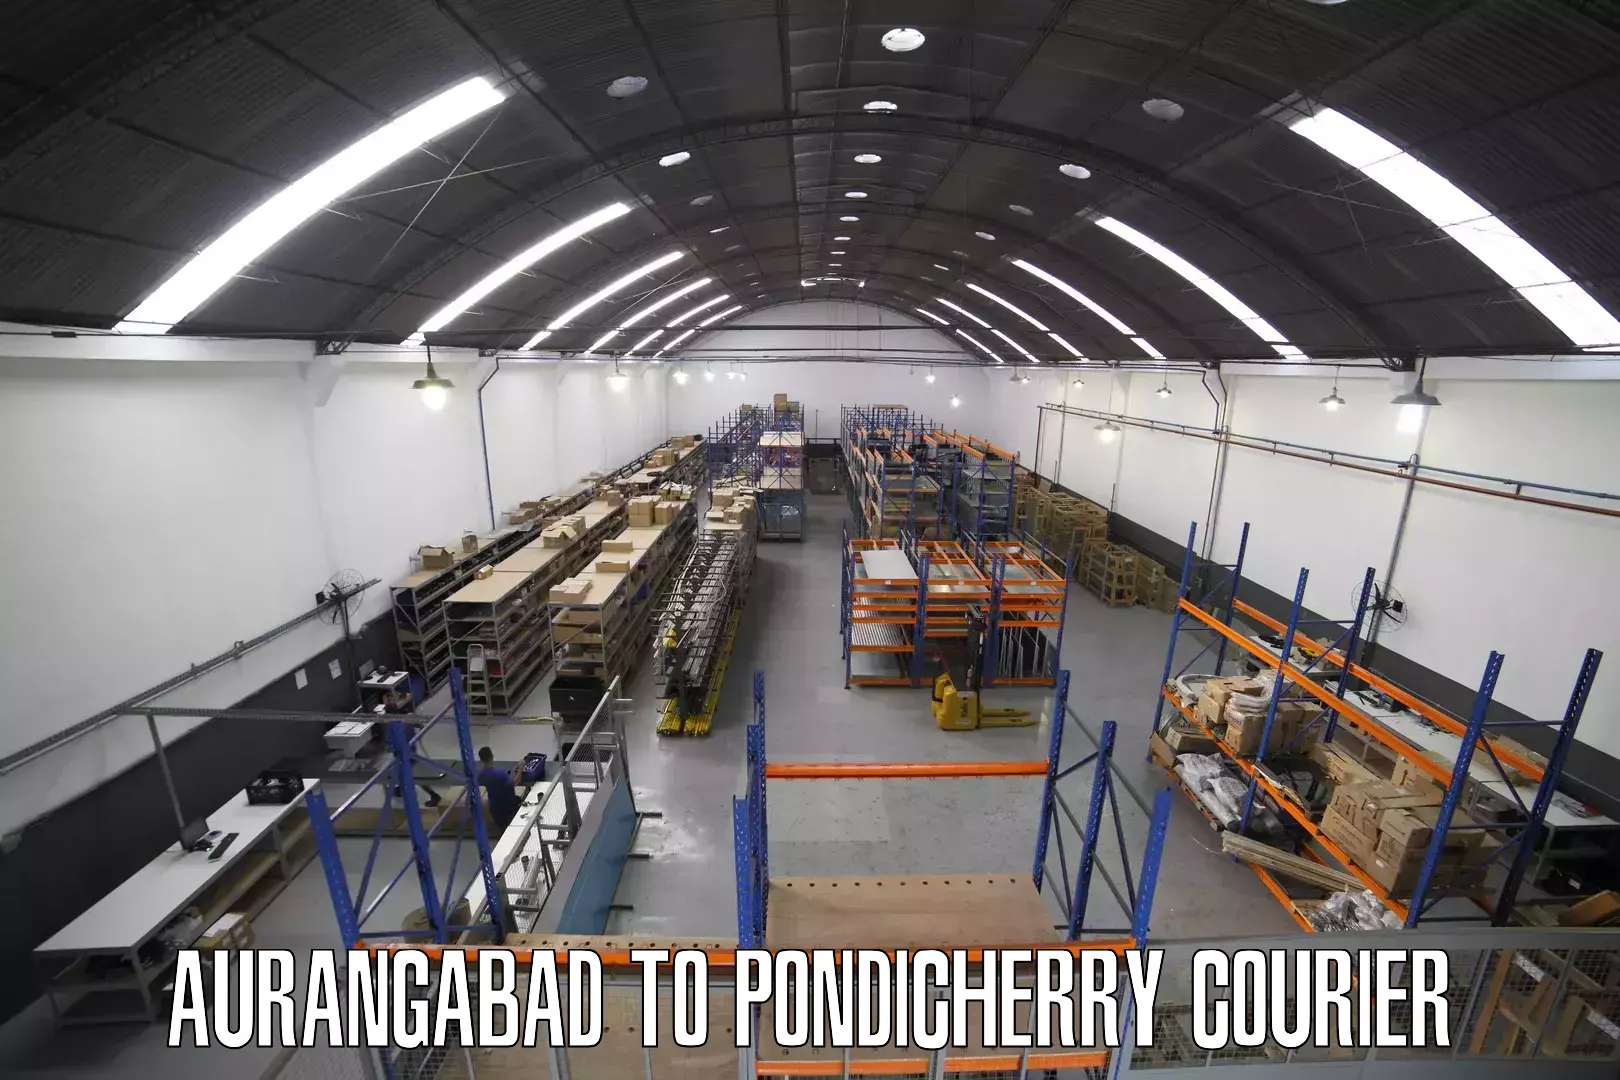 Next-generation courier services Aurangabad to Pondicherry